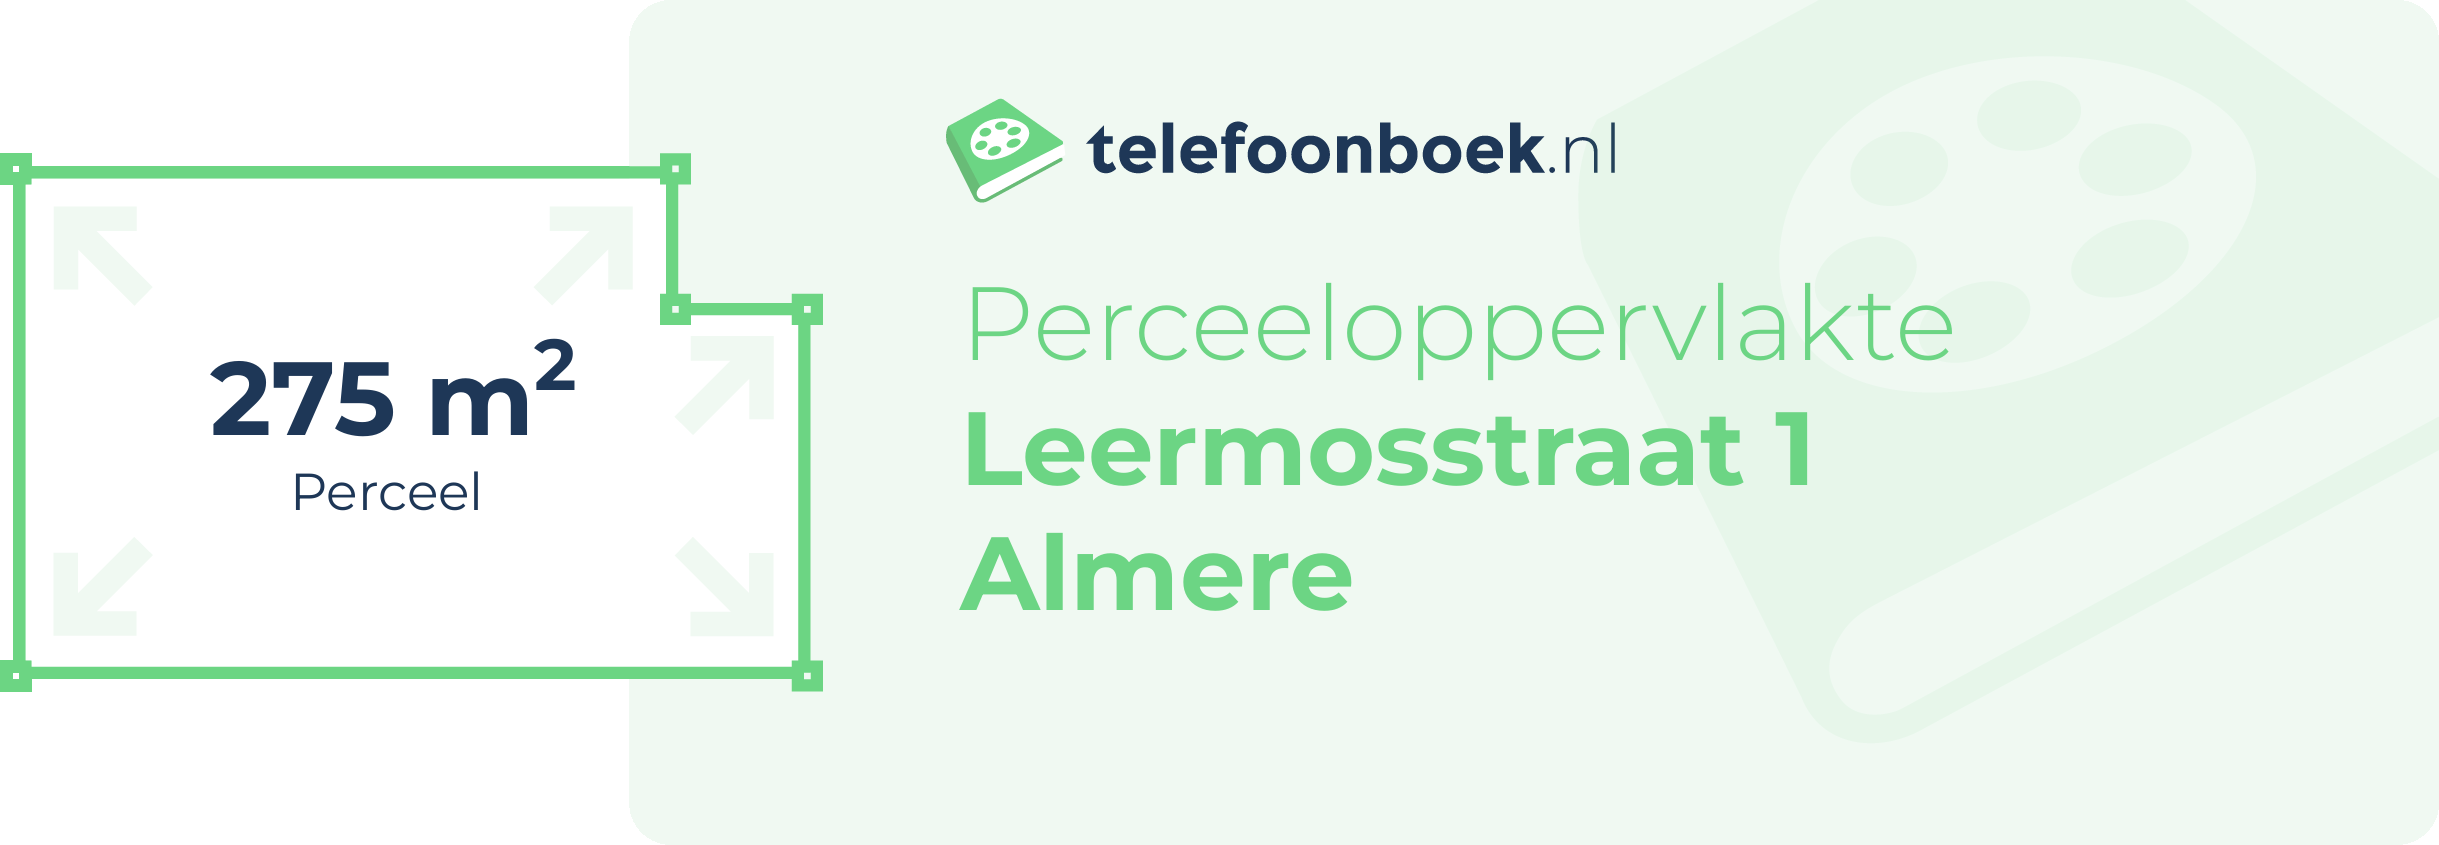 Perceeloppervlakte Leermosstraat 1 Almere